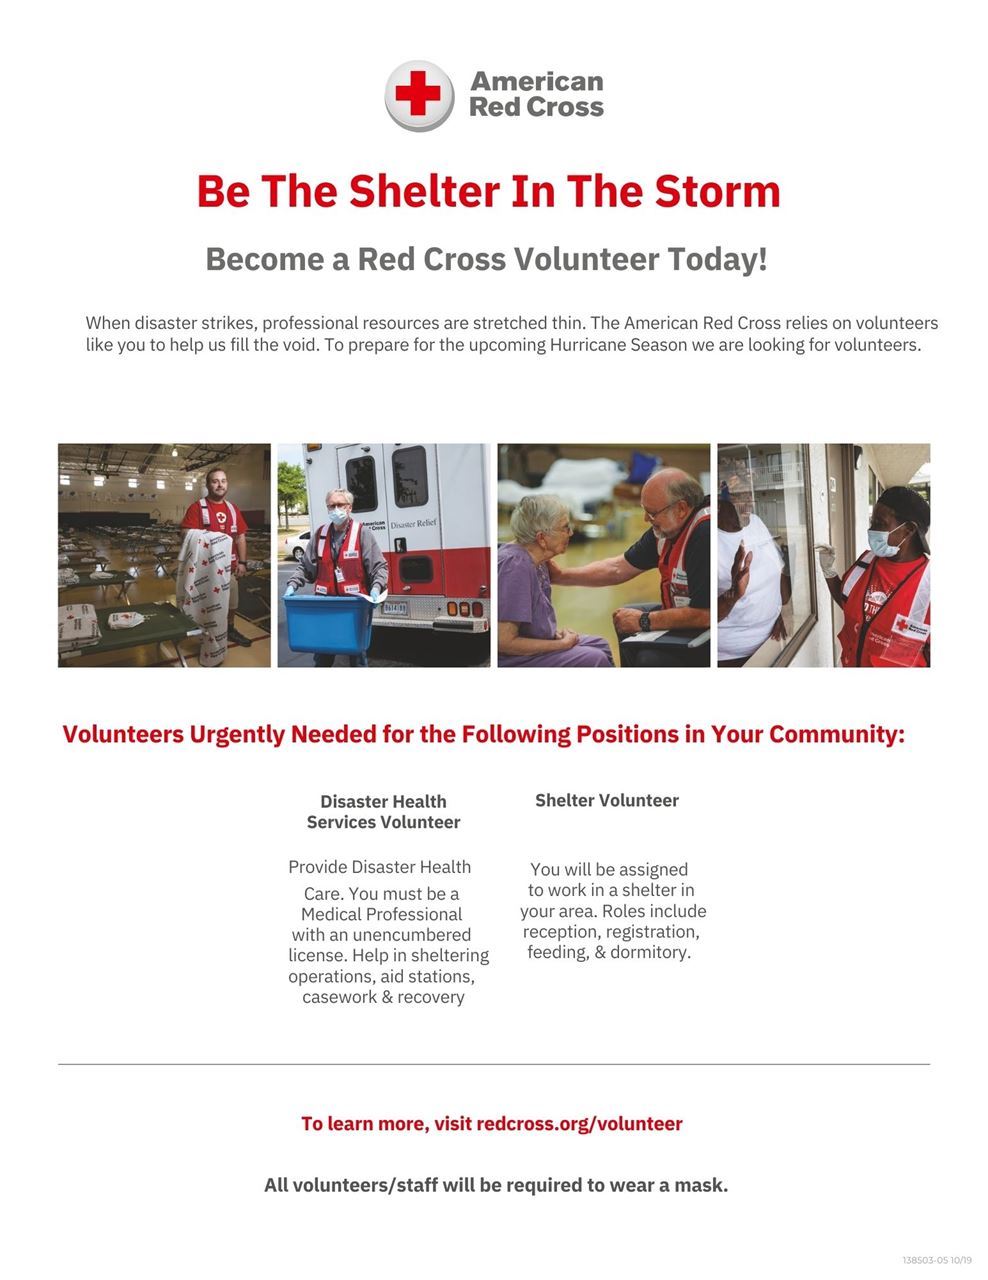 Red Cross volunteer request image